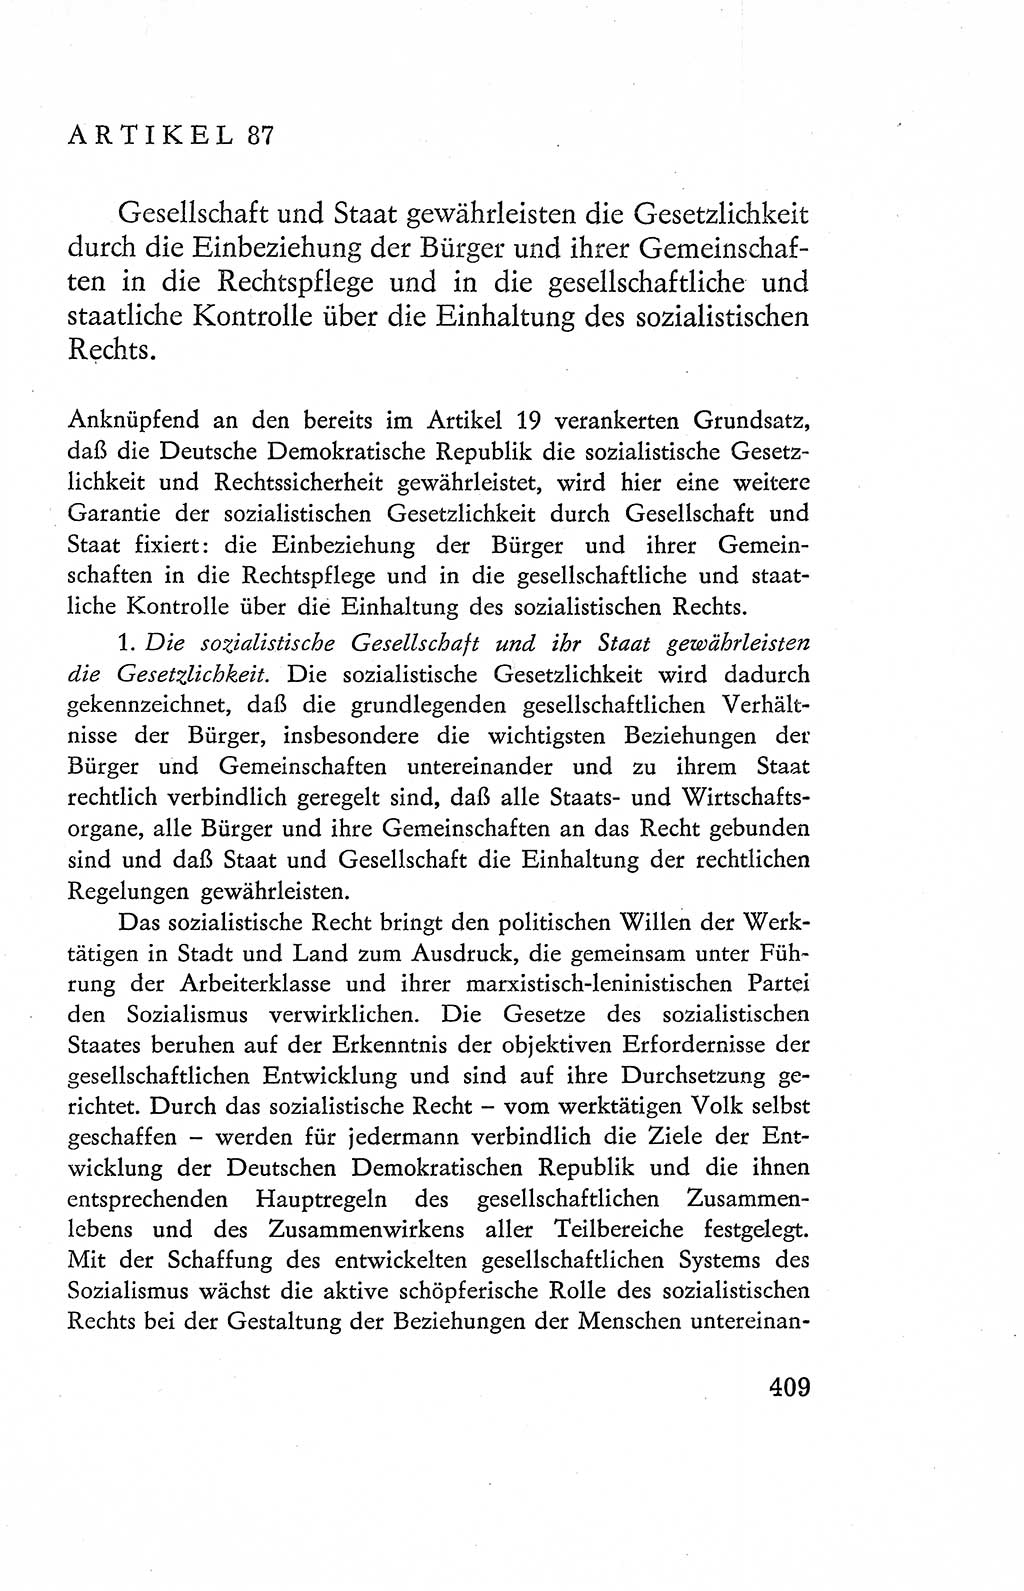 Verfassung der Deutschen Demokratischen Republik (DDR), Dokumente, Kommentar 1969, Band 2, Seite 409 (Verf. DDR Dok. Komm. 1969, Bd. 2, S. 409)